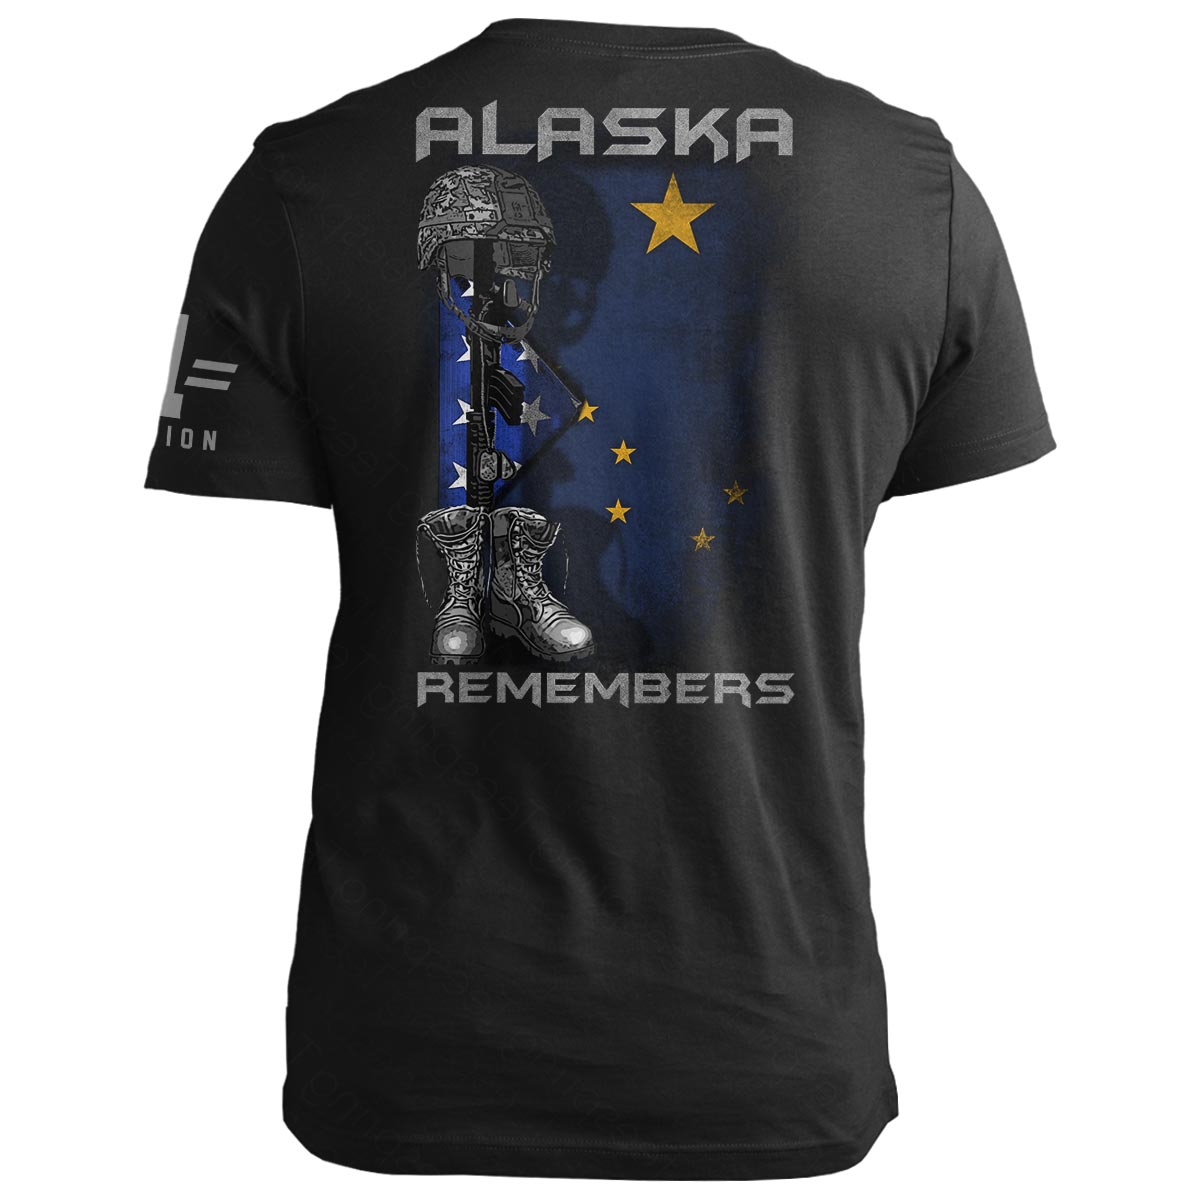 Alaska Remembers